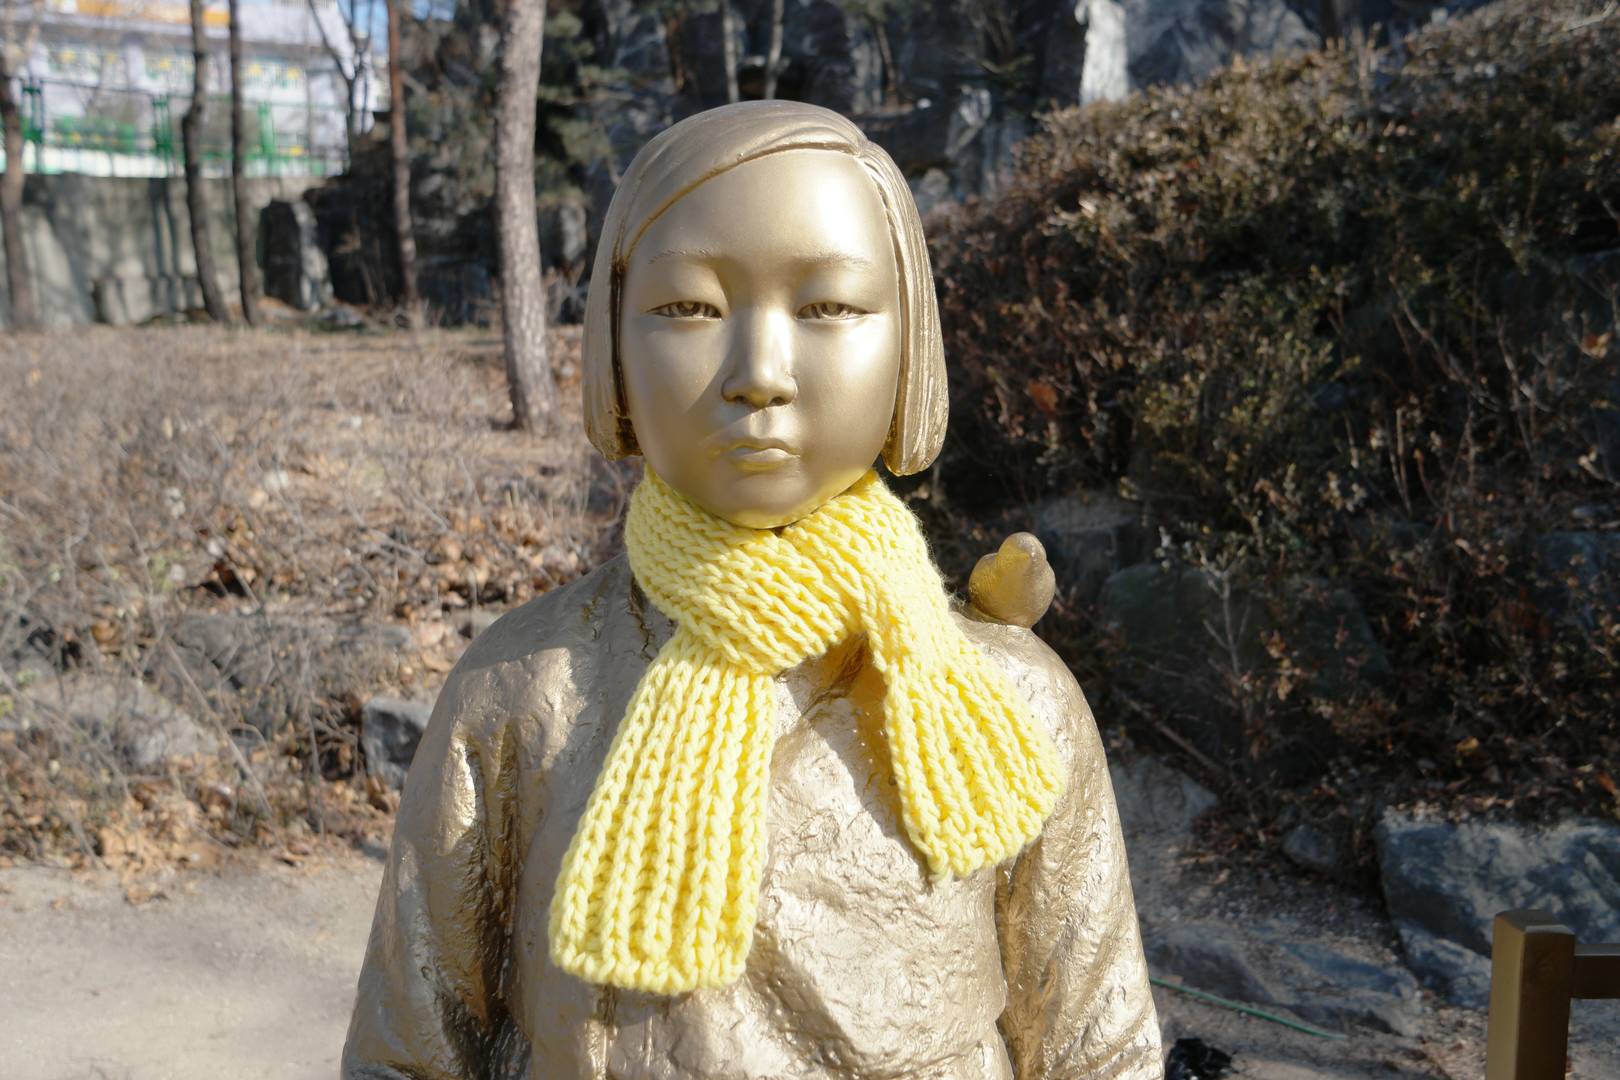 Памятник корейским «женщинам для утех», которых власти Японии держали в сексуальном рабстве во время колониального правления на Корейском полуострове